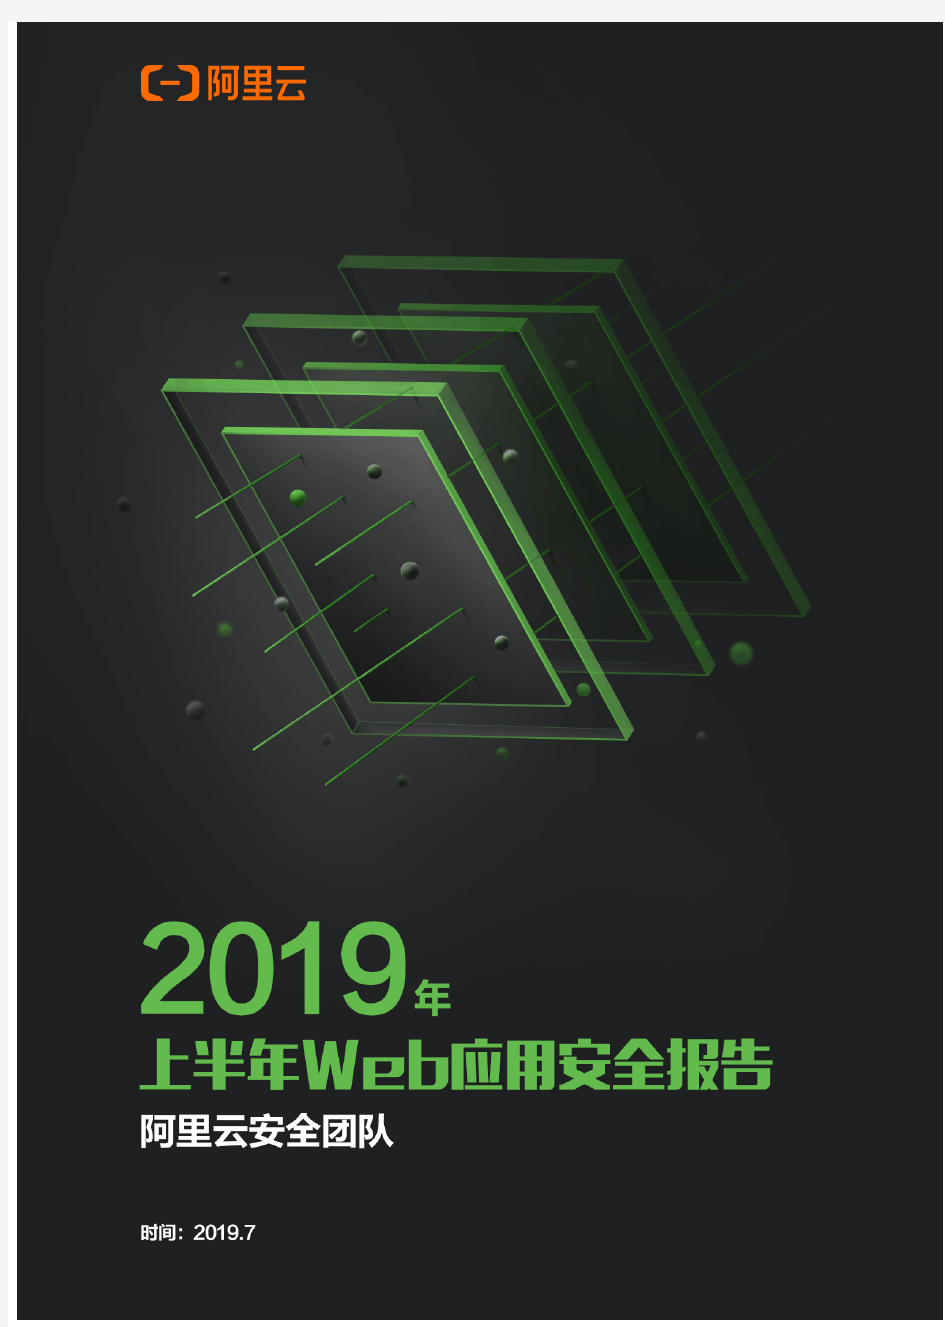 阿里云-2019年上半年Web应用安全报告